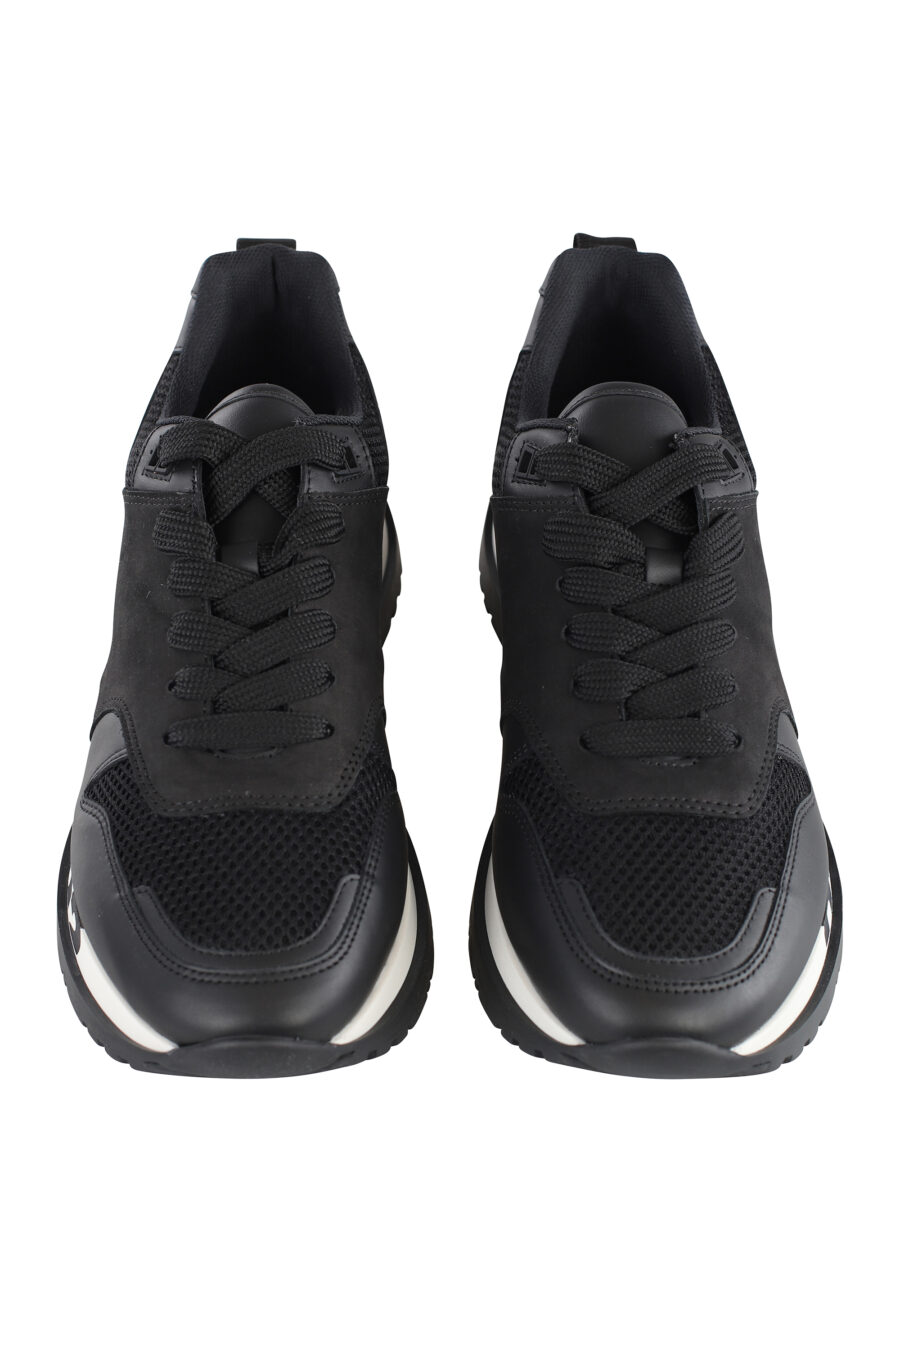 Zapatillas negras con logo en suela - IMG 7094